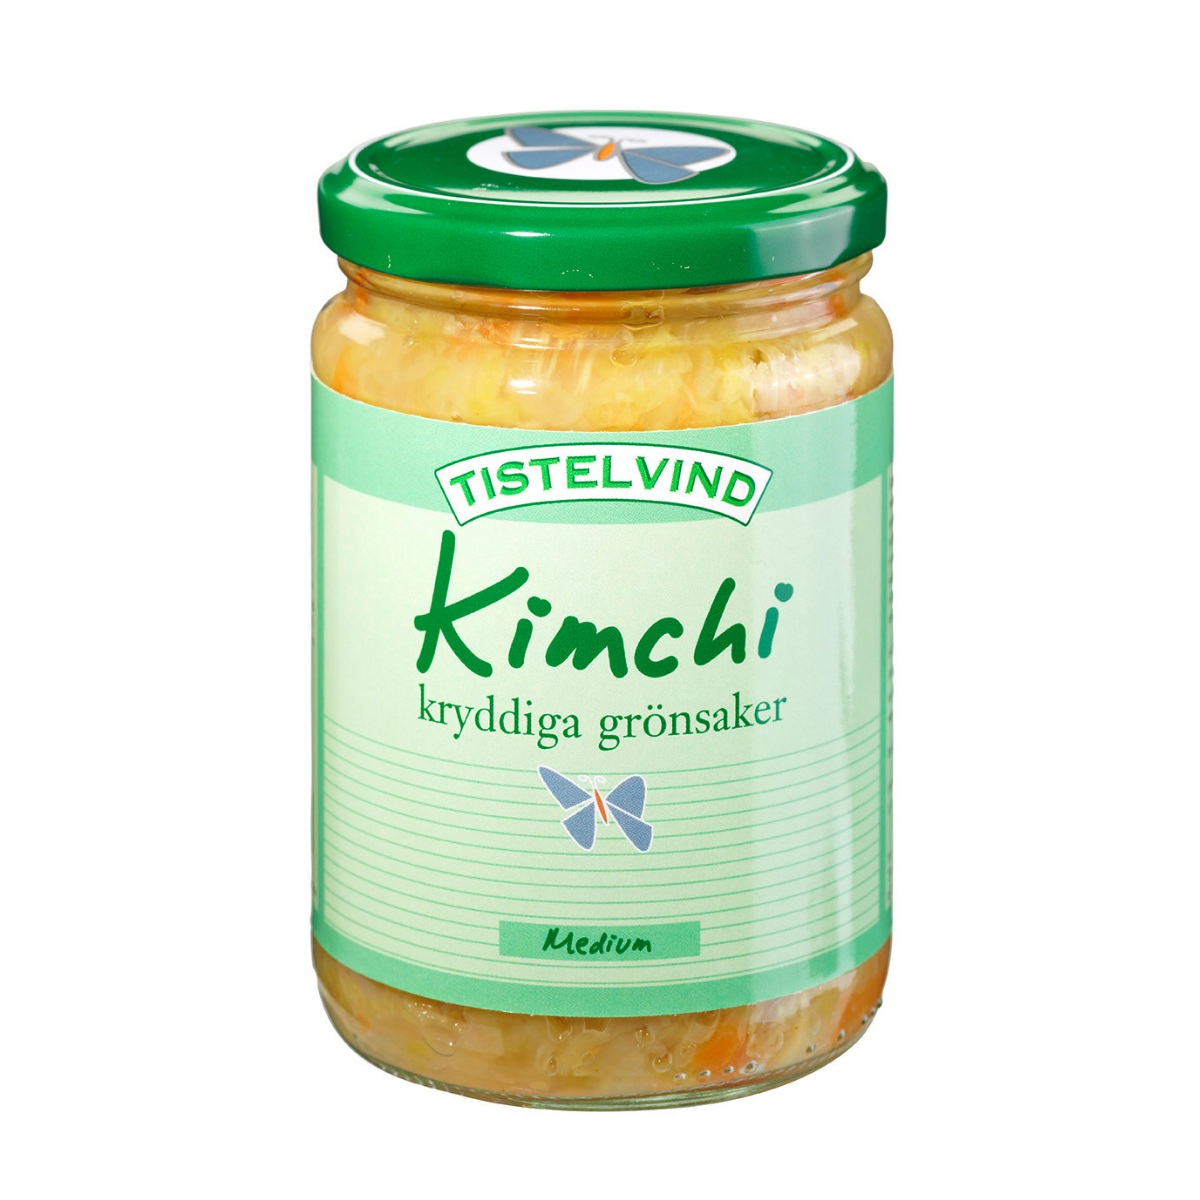 Tistelvind's Kimchi mittel